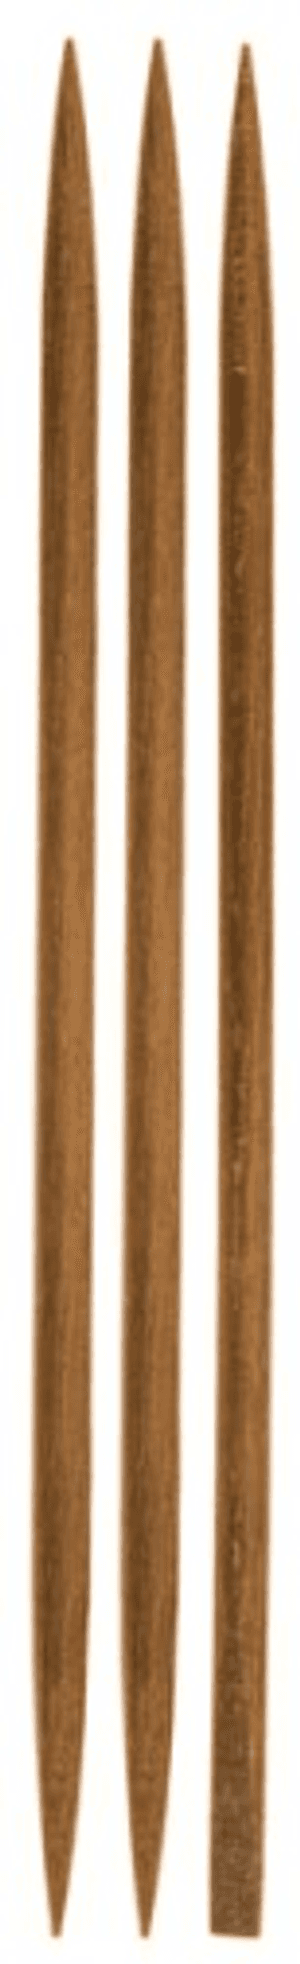 Produto Ricca palitos de manicure em madeira paraju com 3 unidades ref 382 foto 1